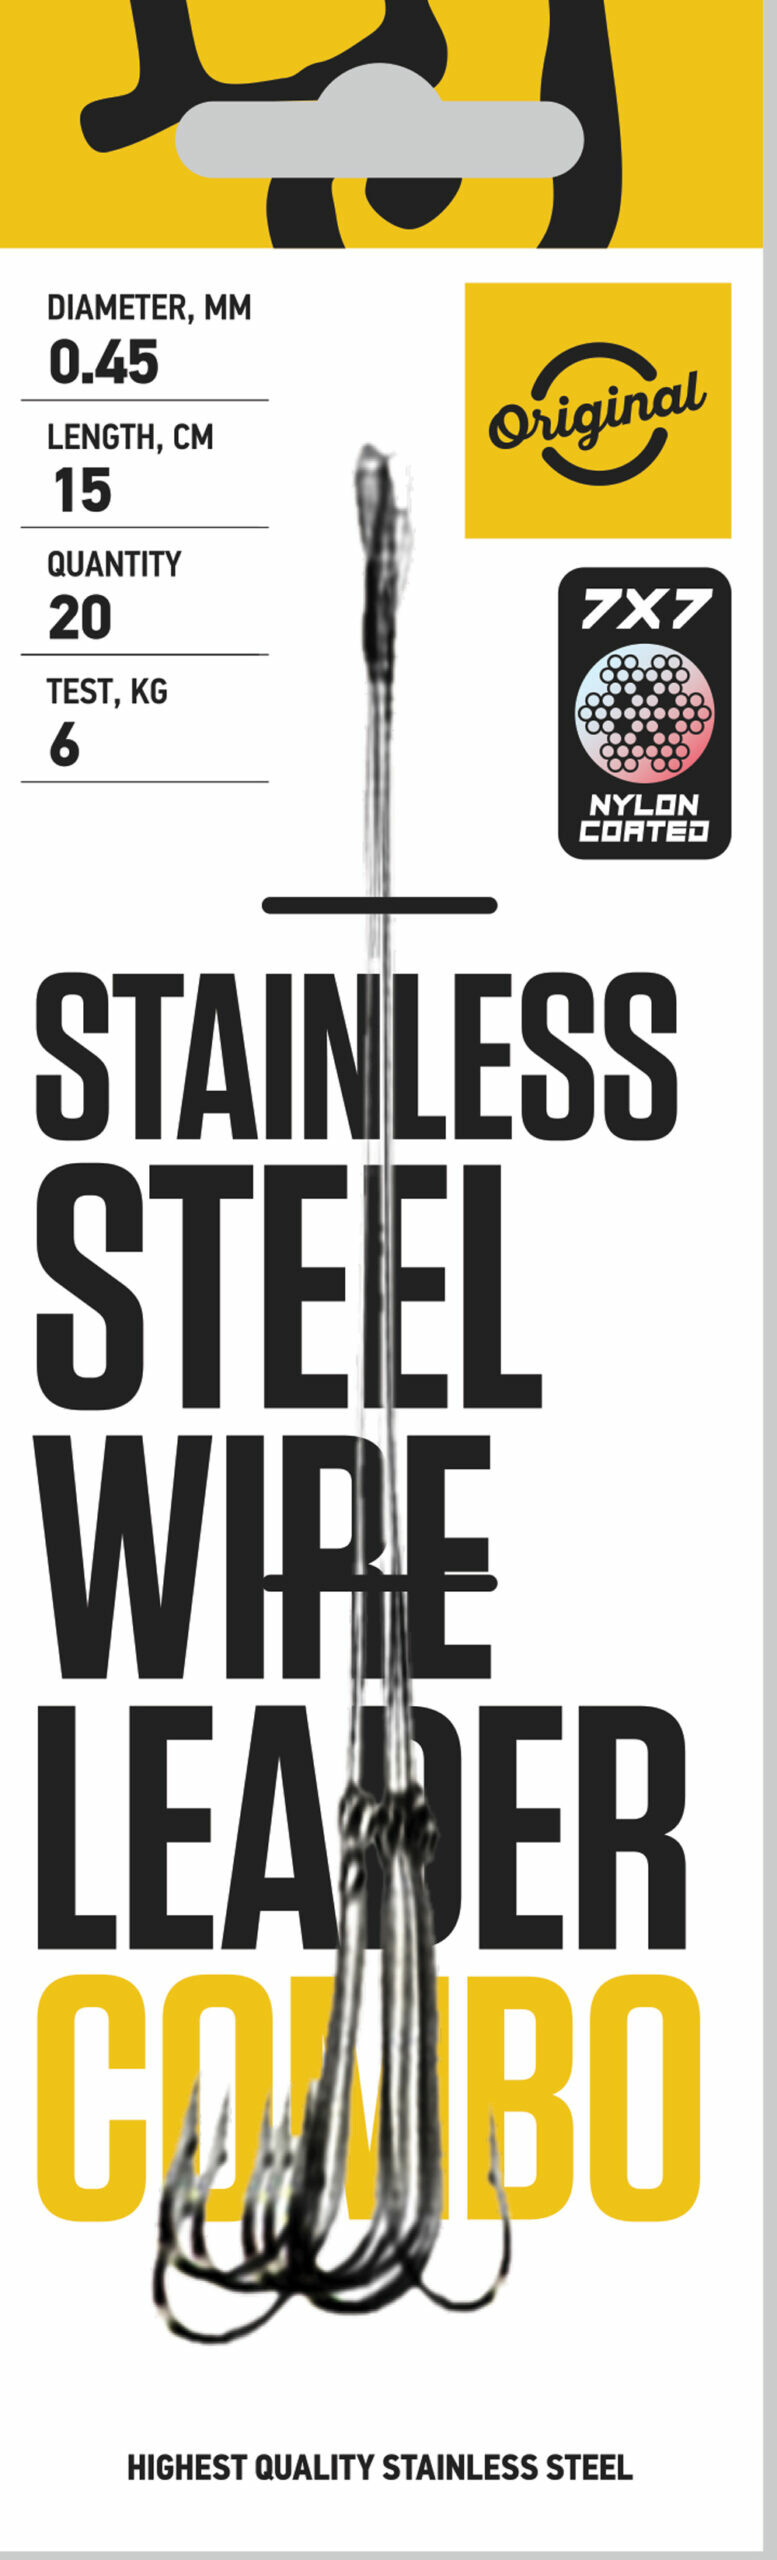 Lucky John ocelové lanko Stainless steel wire leader combo 7x7, 1ks